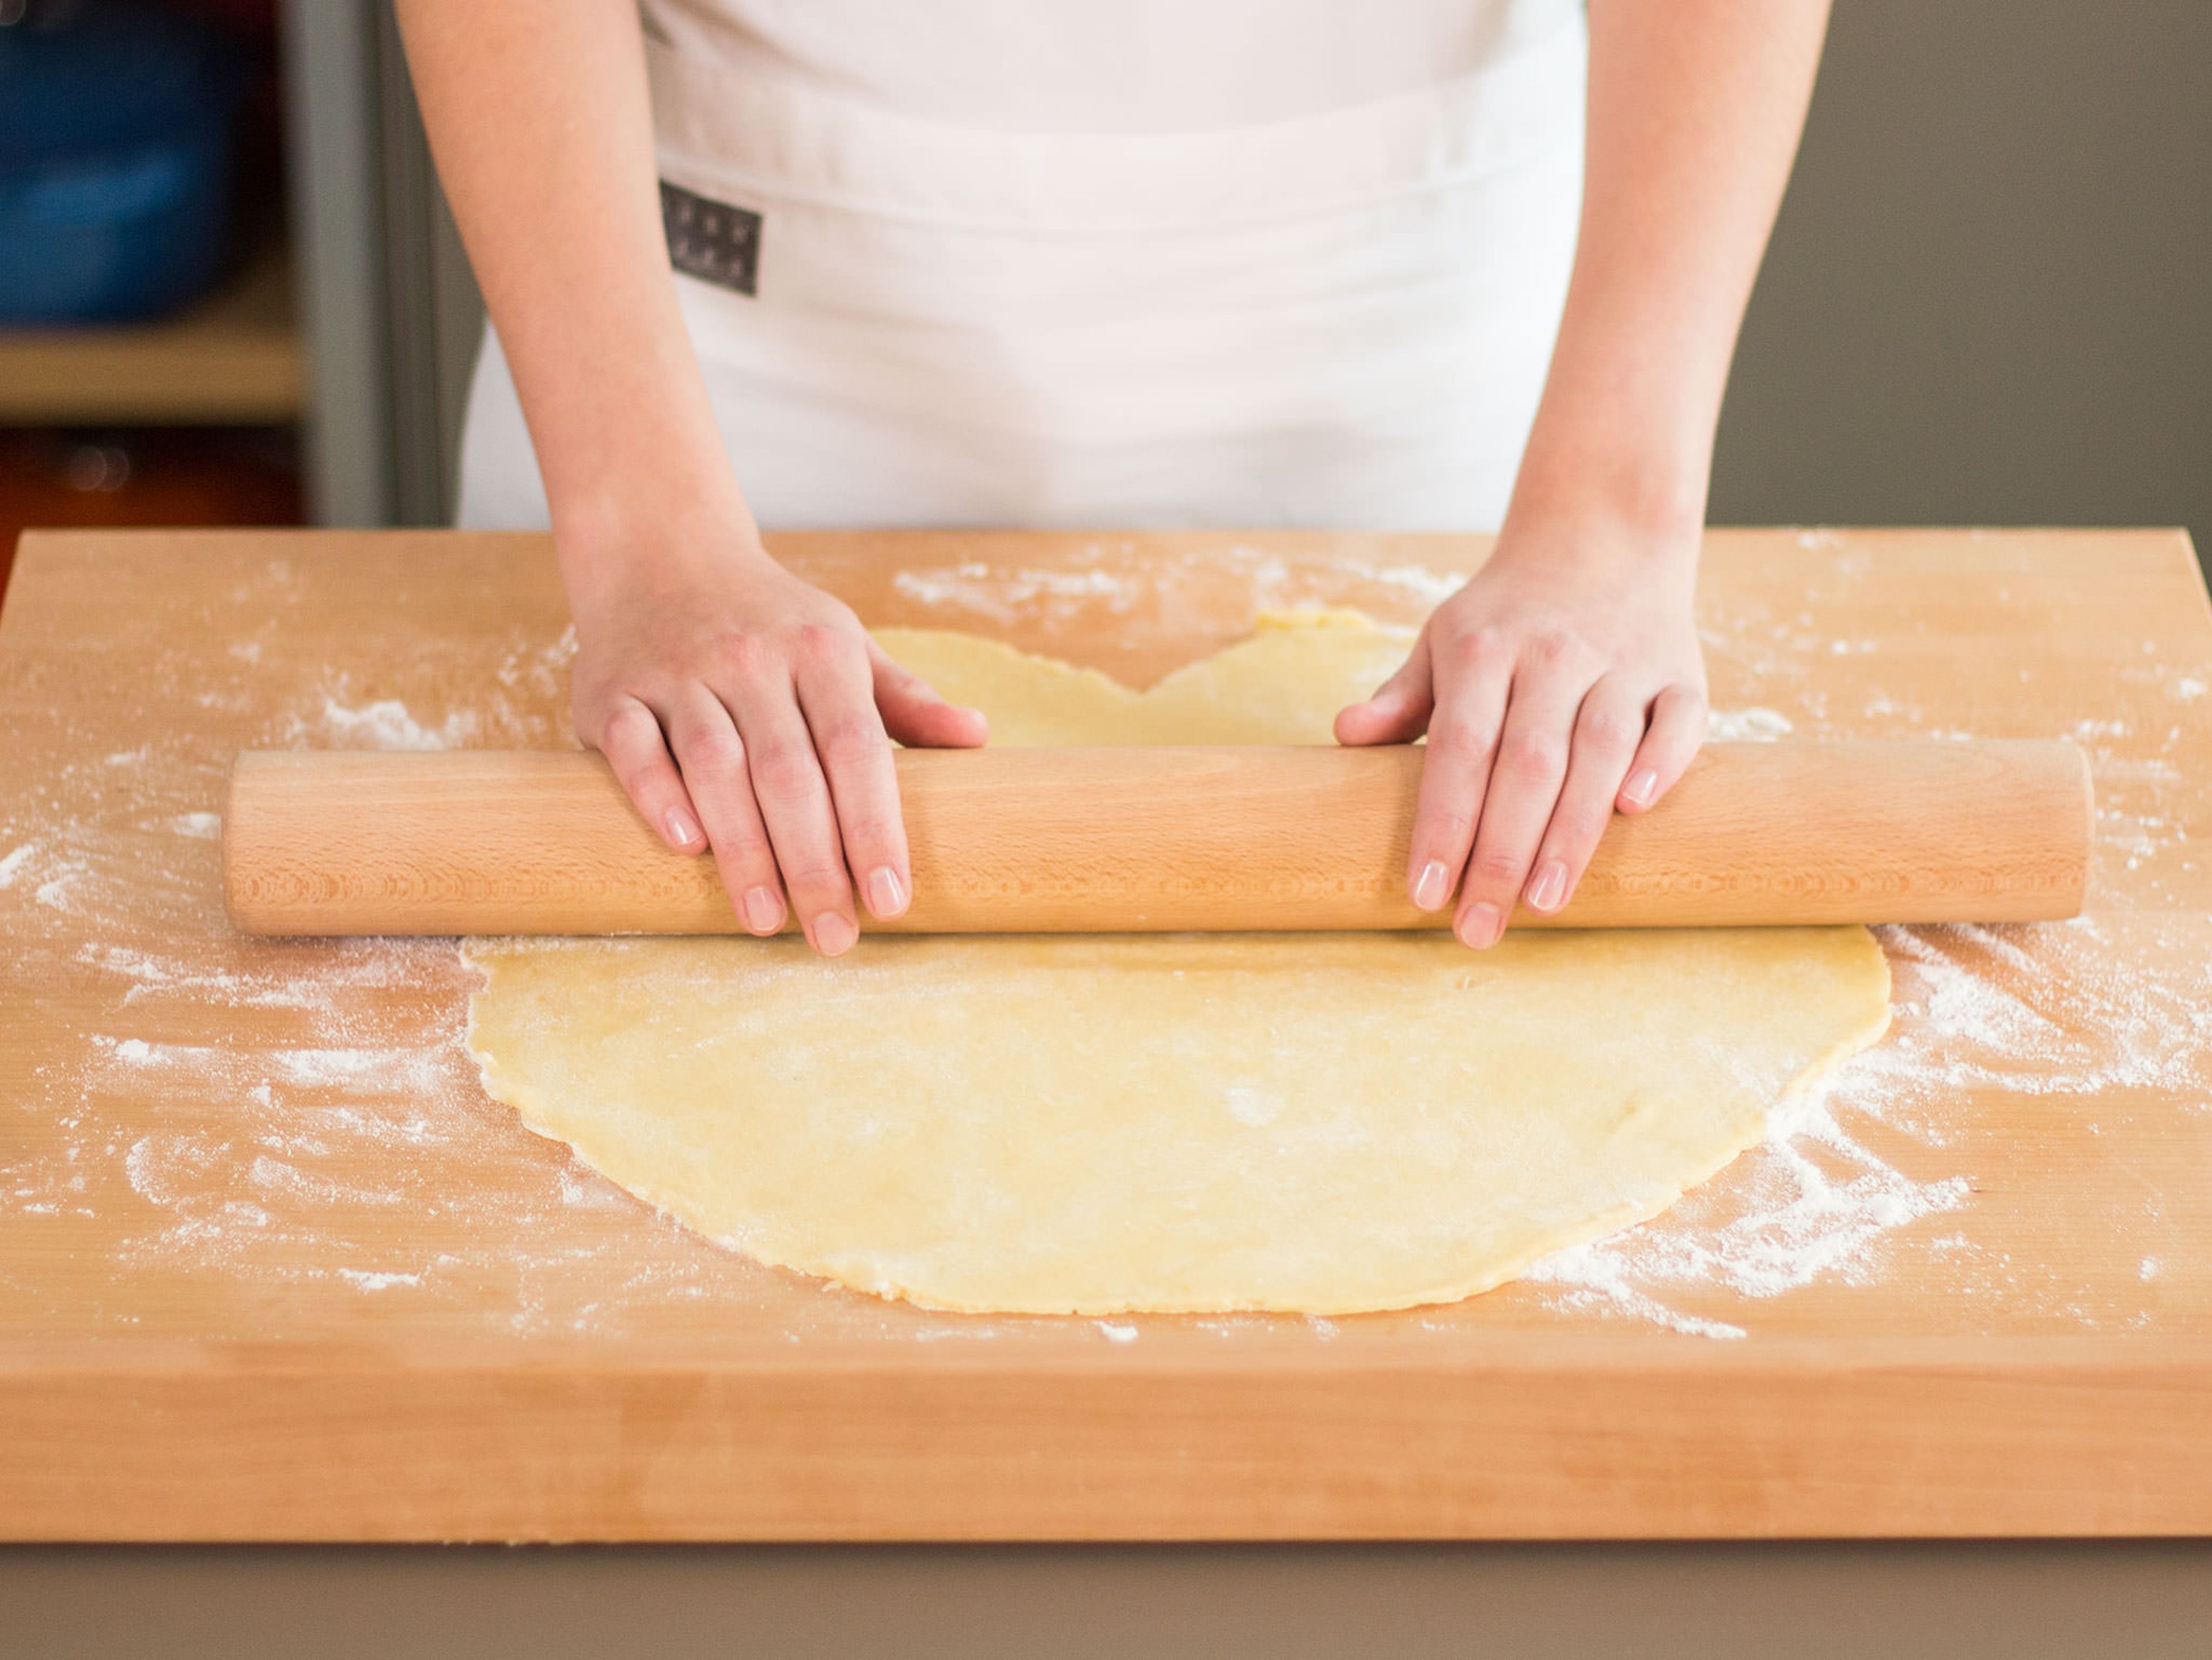 Backofen auf 180°C vorheizen. Mürbeteig in zwei gleich große Teile schneiden. Arbeitsfläche mit Mehl Bestäuben und Teig mit einem Nudelholz ausrollen, bis beide Teile größer als die Pie-Form sind.